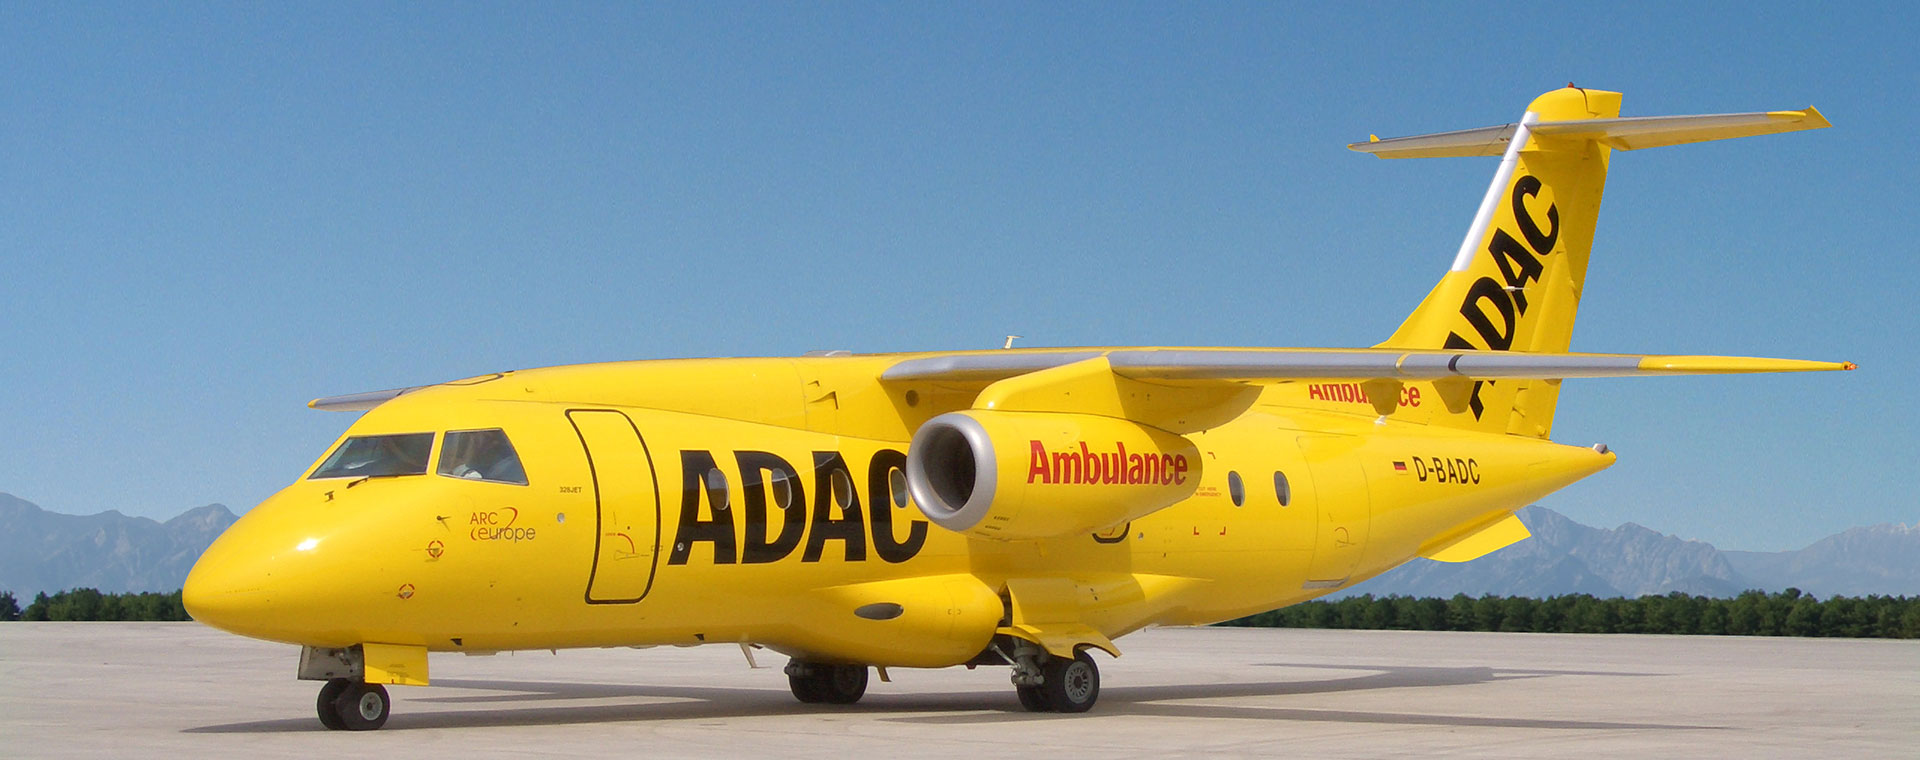 Aero-Dienst Air Ambulance Dornier 328Jet